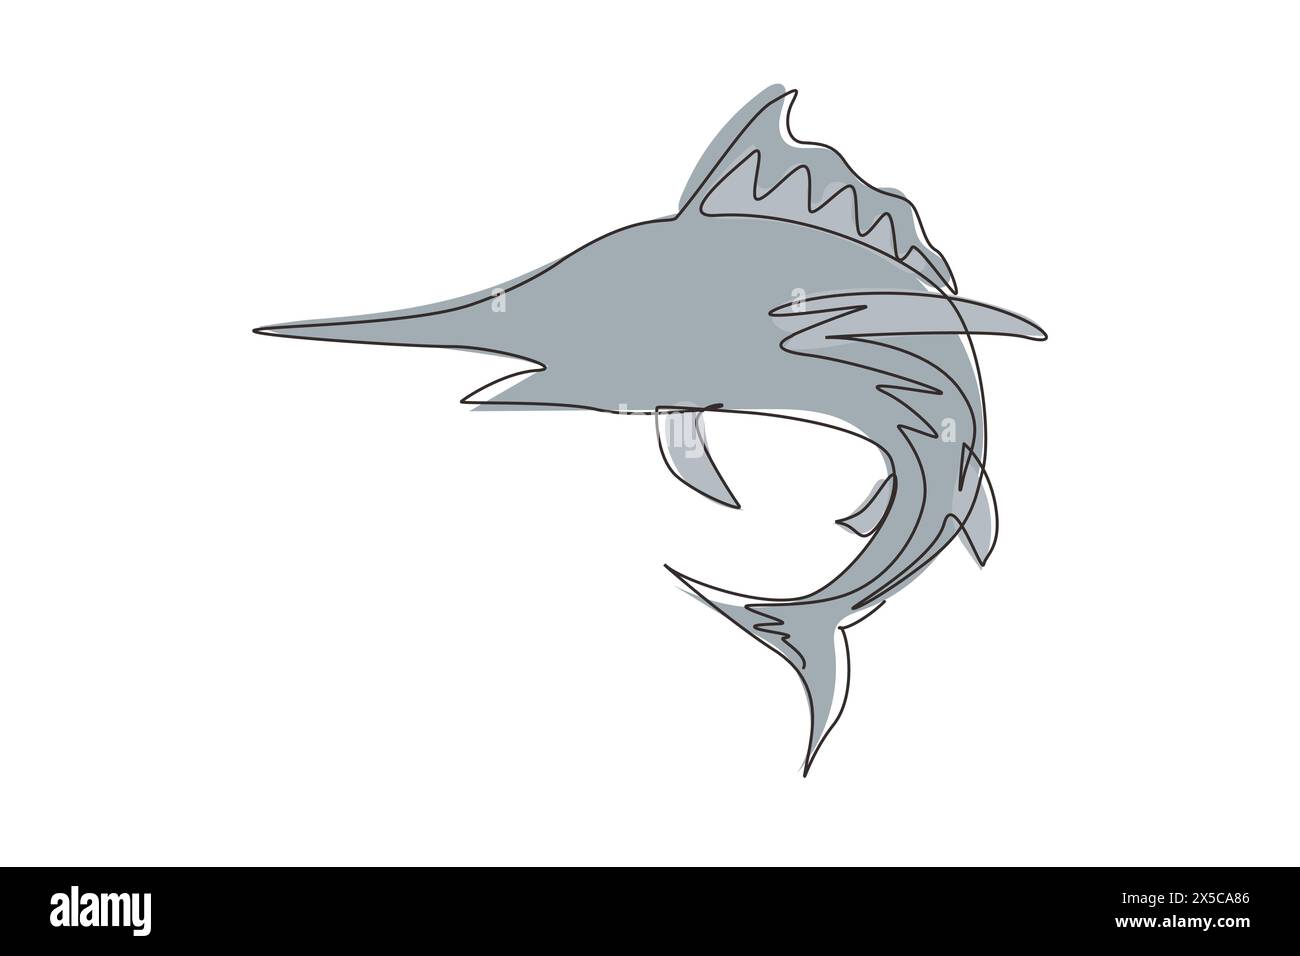 Einfarbiges, durchgehendes Marlin-Fisch-Logo. Einzigartiger und frischer blauer Marlin unter Ozeanwasser. Ideal für Ihre Angeltätigkeit im blauen Marlin MAS Stock Vektor